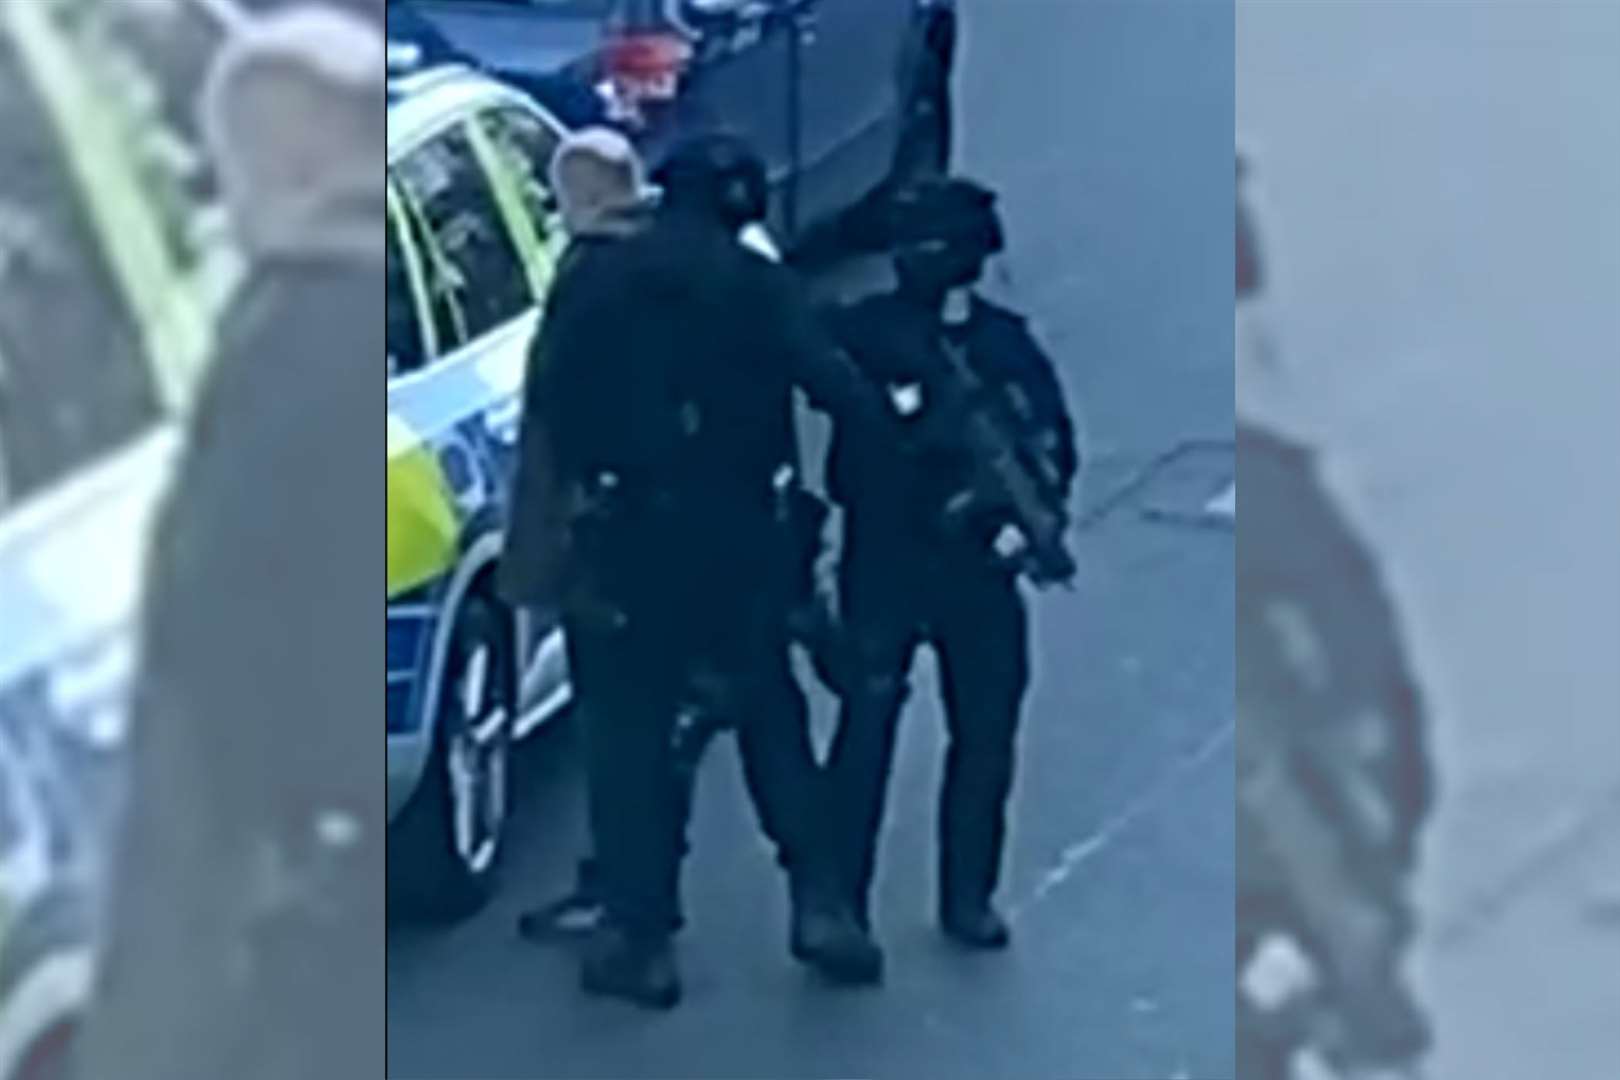 Armed police in Tontine Street, Folkestone